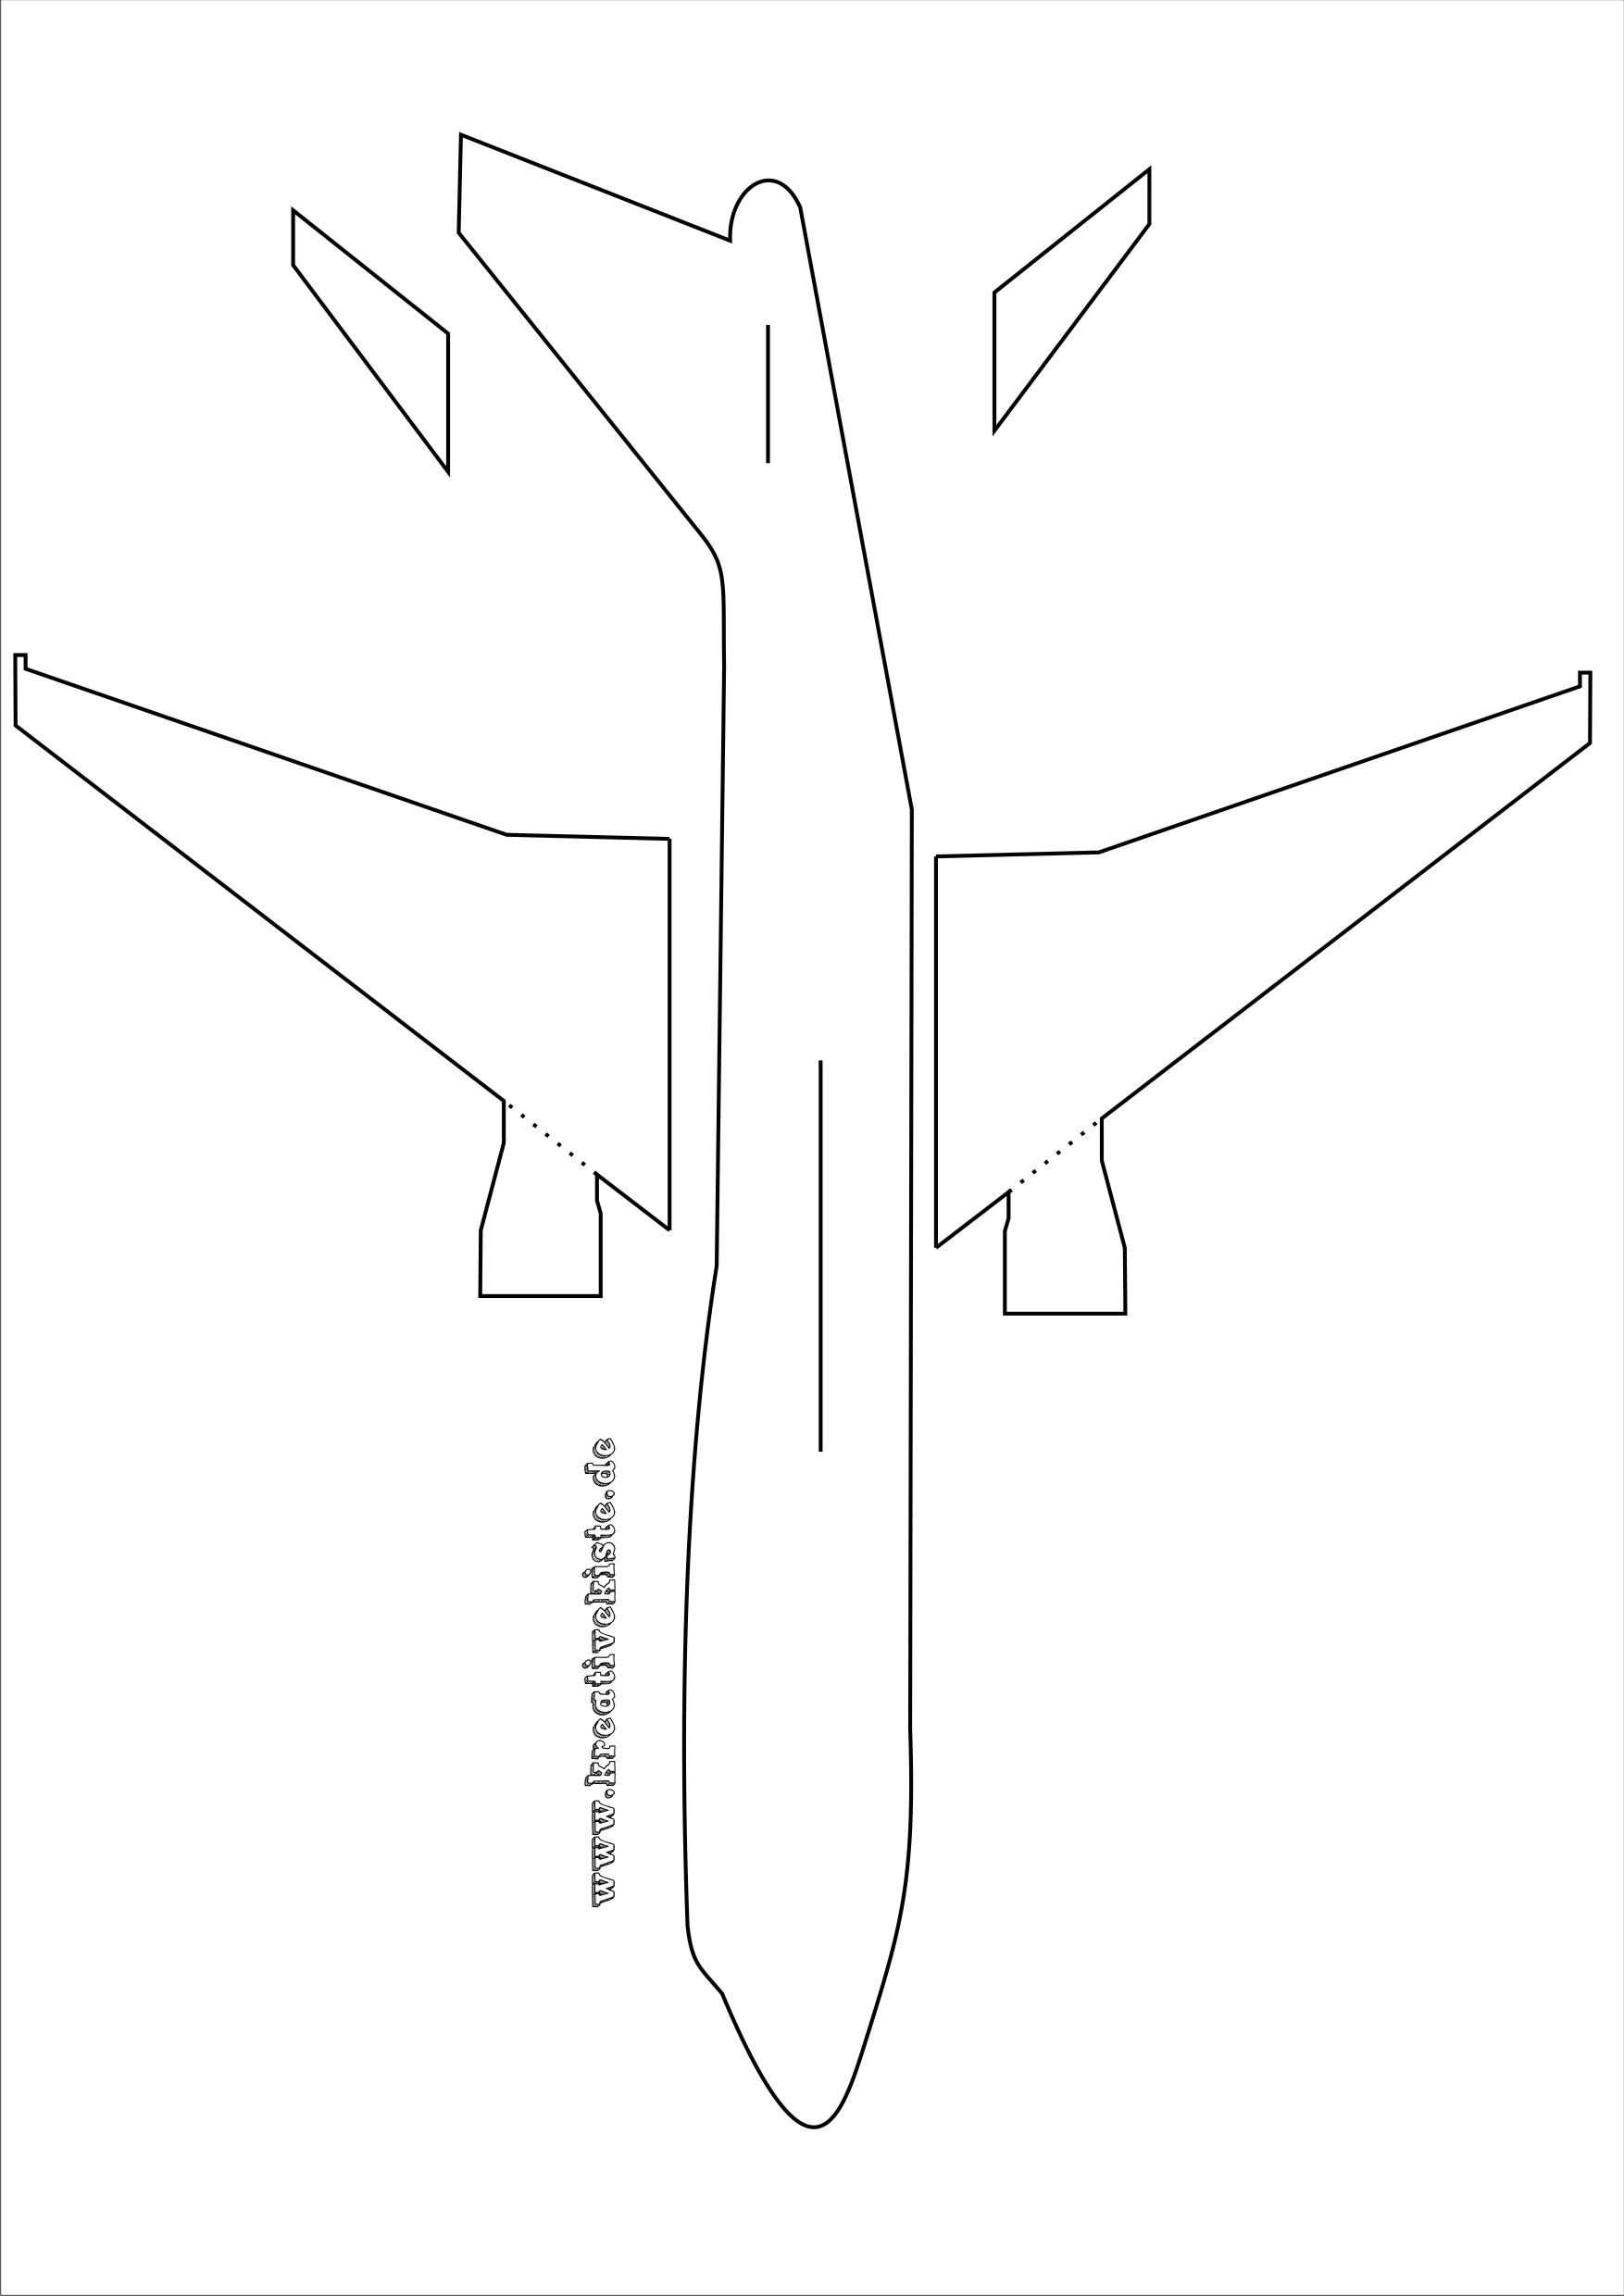 Laubsaege Flugzeug Vorlage A3 Bastelvorlagen Zum Ausdrucken Laubsagen Vorlagen Flugzeug Basteln